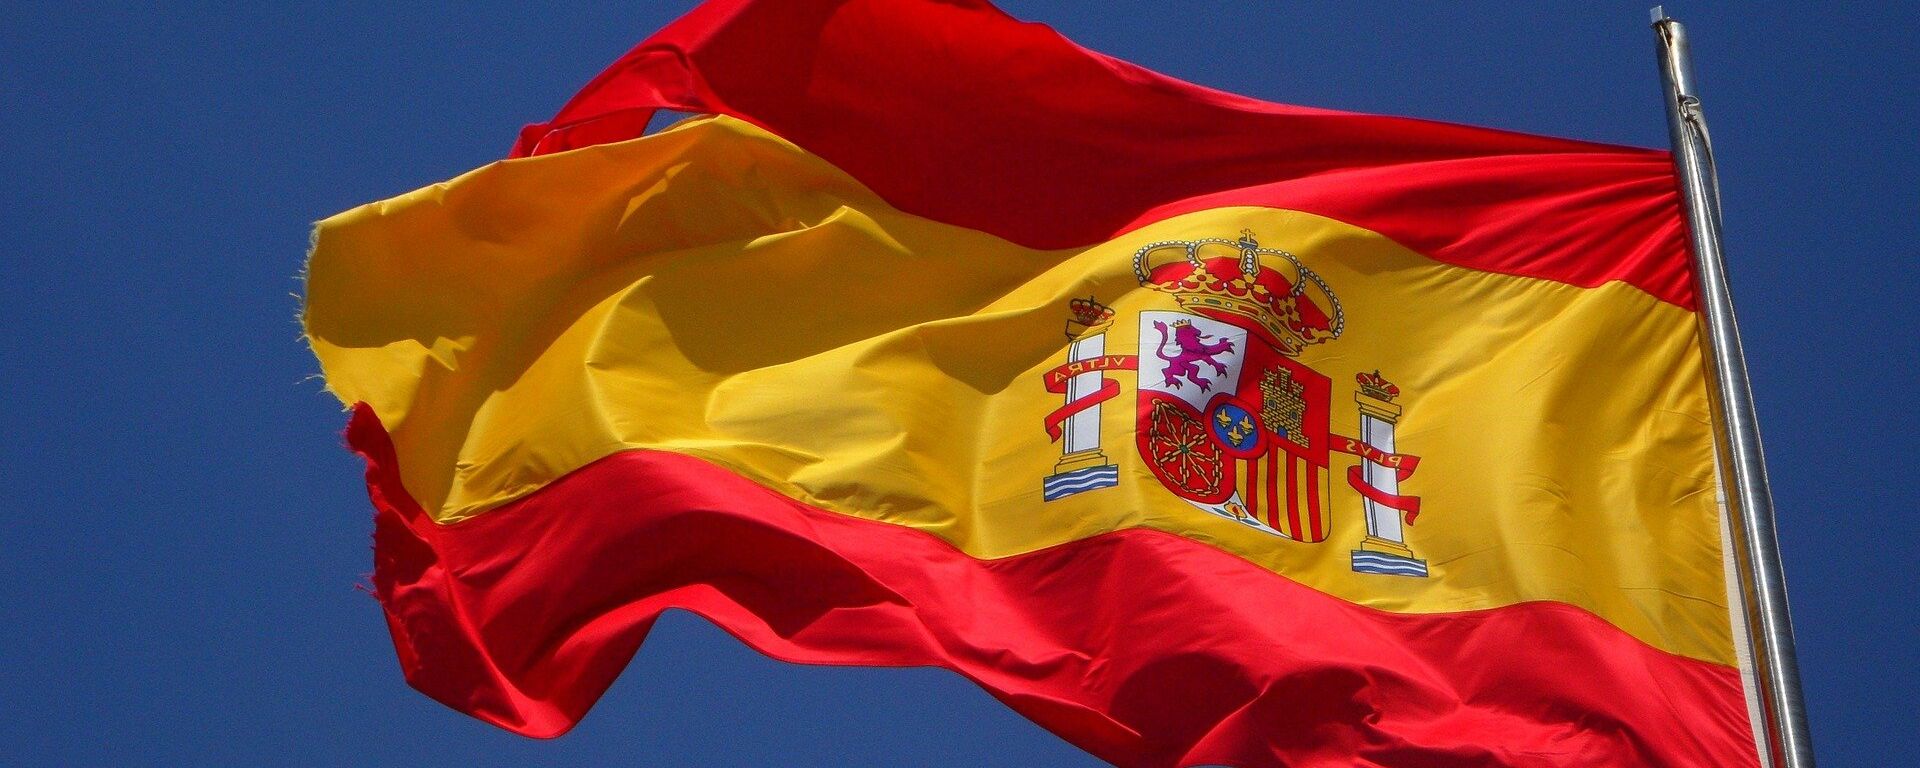 La bandera de España - Sputnik Mundo, 1920, 29.03.2019